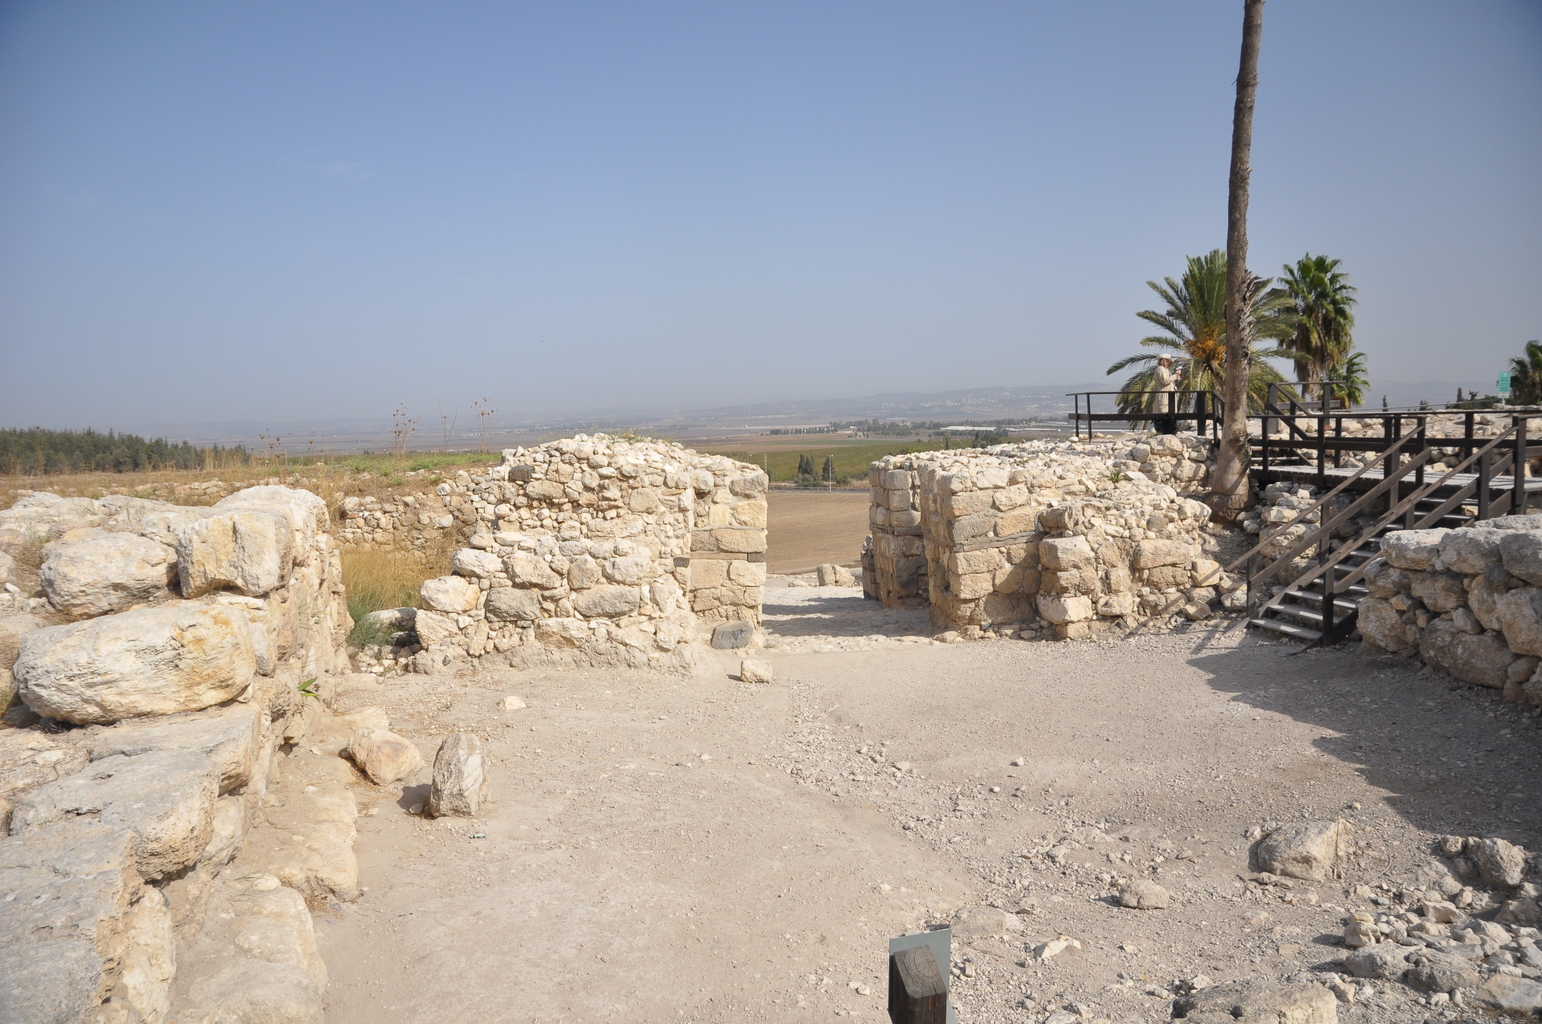 Ханаанские ворота периода поздней бронзы и площадь перед ними (вид изнутри, другой ракурс)